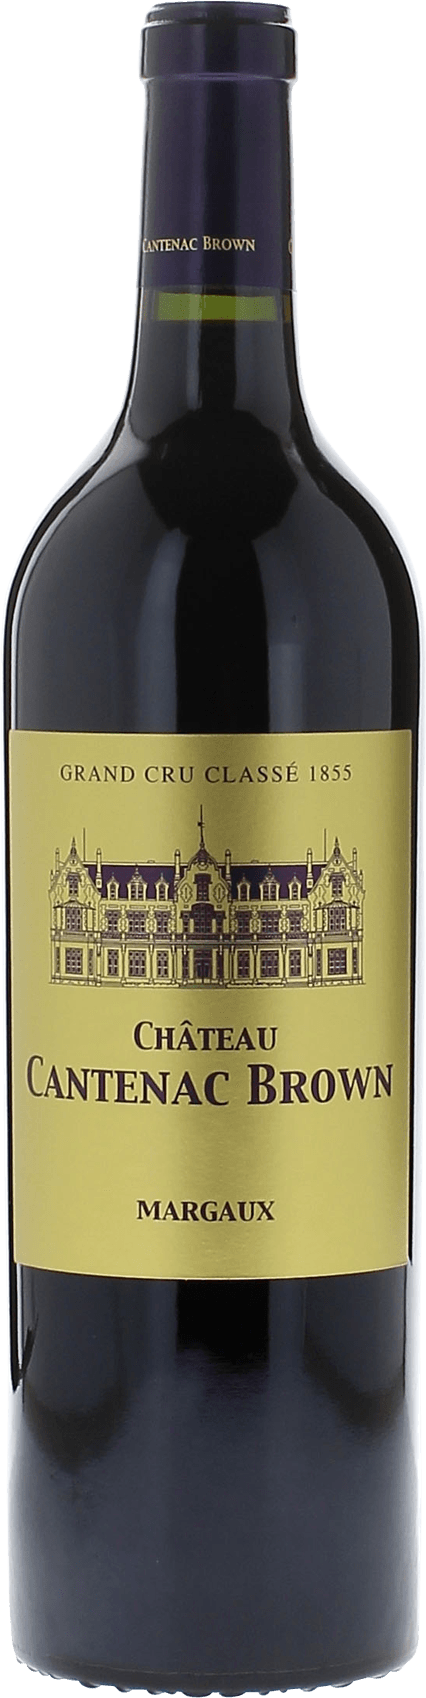 Cantenac brown 2016 2me Grand cru class Margaux, Bordeaux rouge